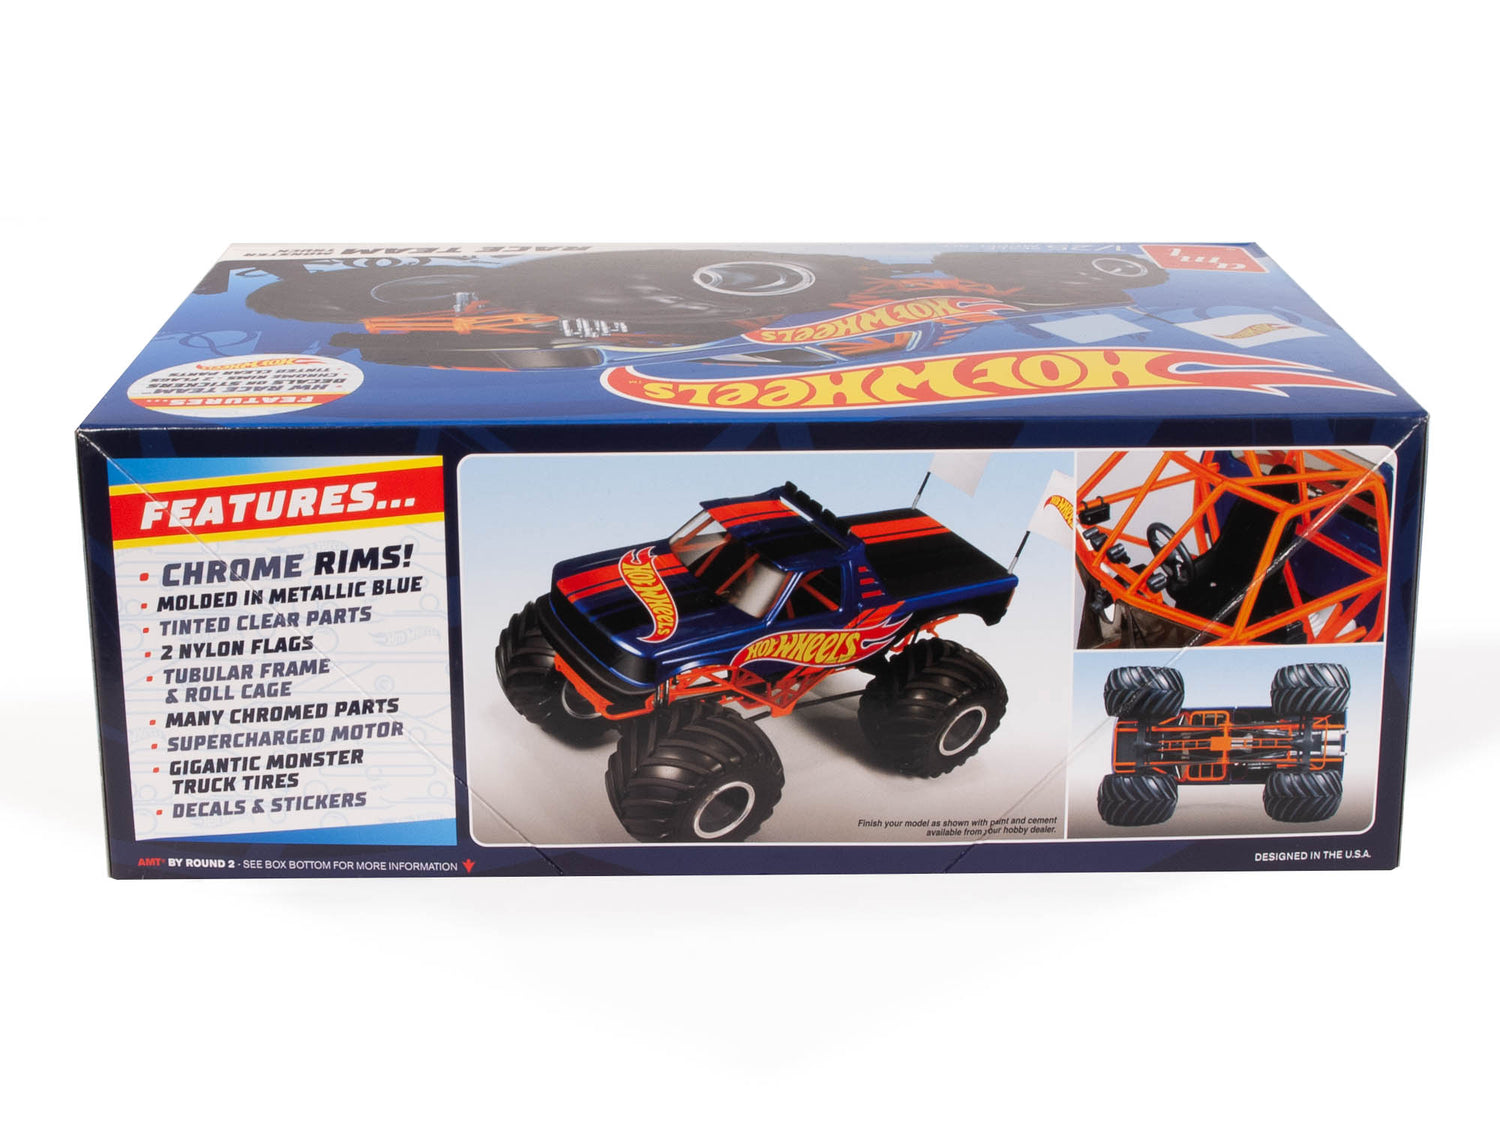 AMT Race Team Monster Truck Hot Wheels 1:25 Scale Model Kit